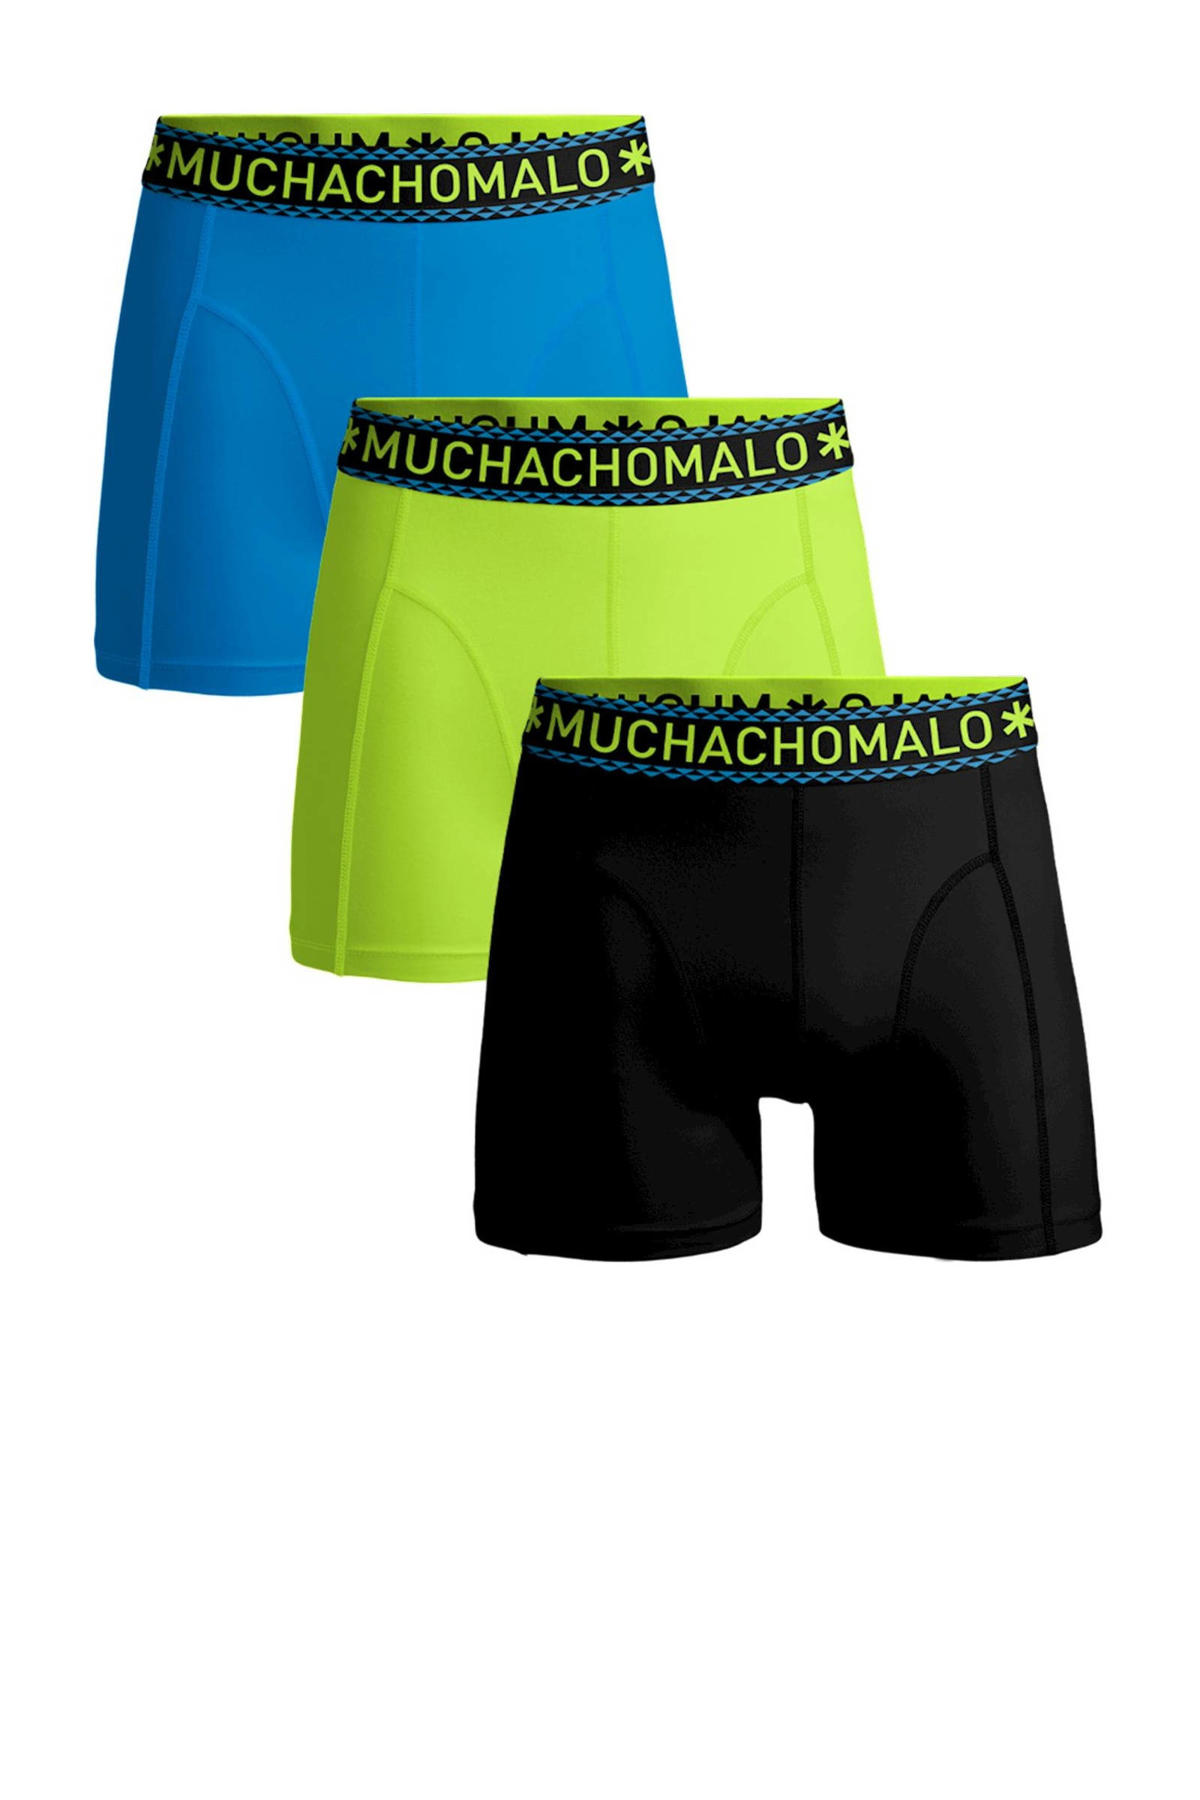 laag De slaapkamer schoonmaken inhoudsopgave Muchachomalo boxershort Solid - set van 3 zwart/neon groen/blauw | wehkamp